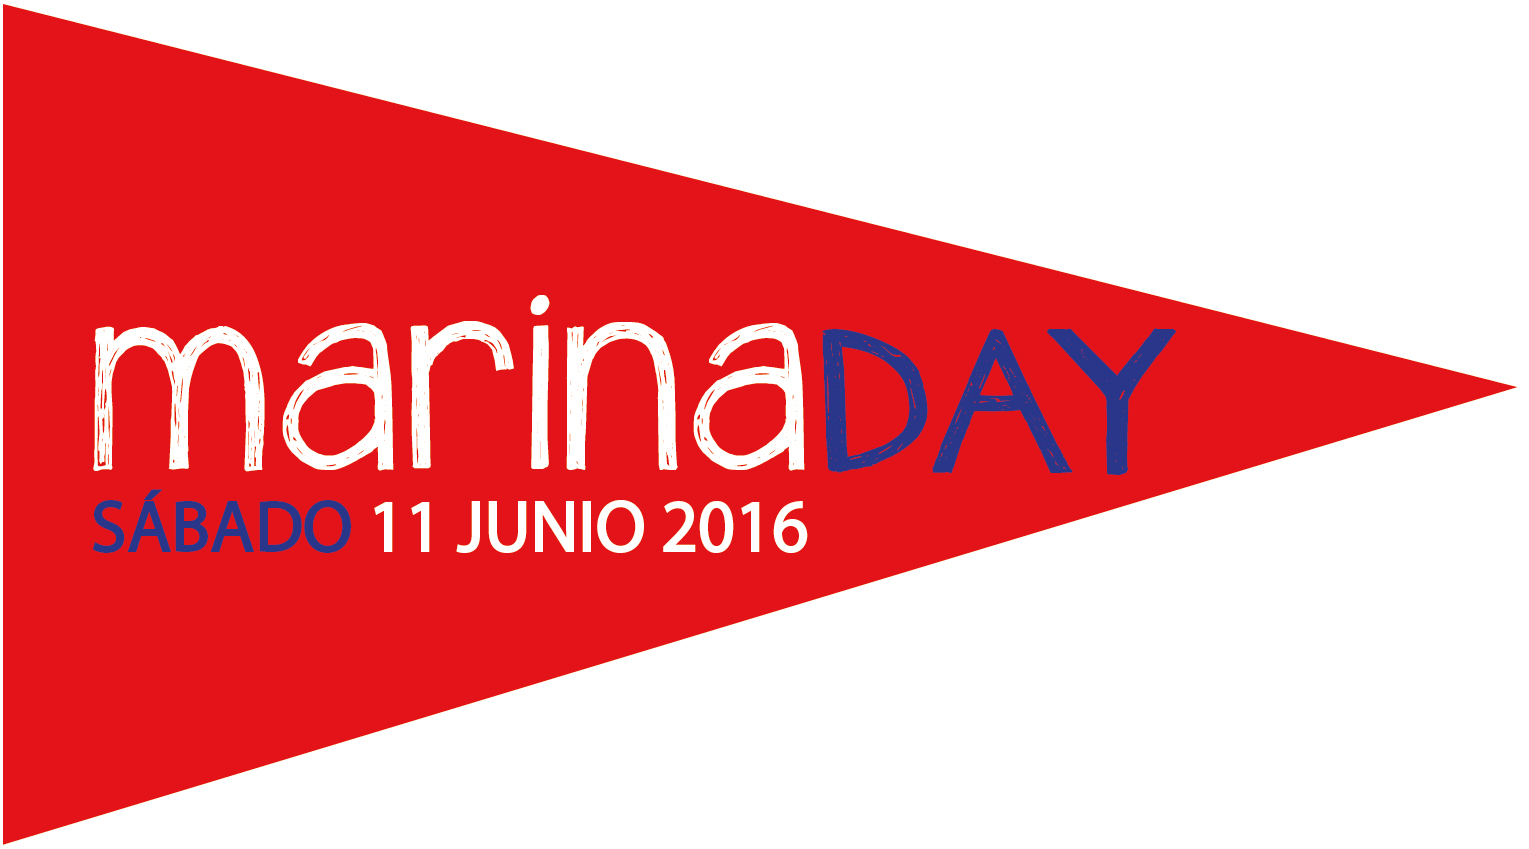 La FEAPDT, a la que pertenece Marinas de Andalucía, impulsará el Marina Day en 2016